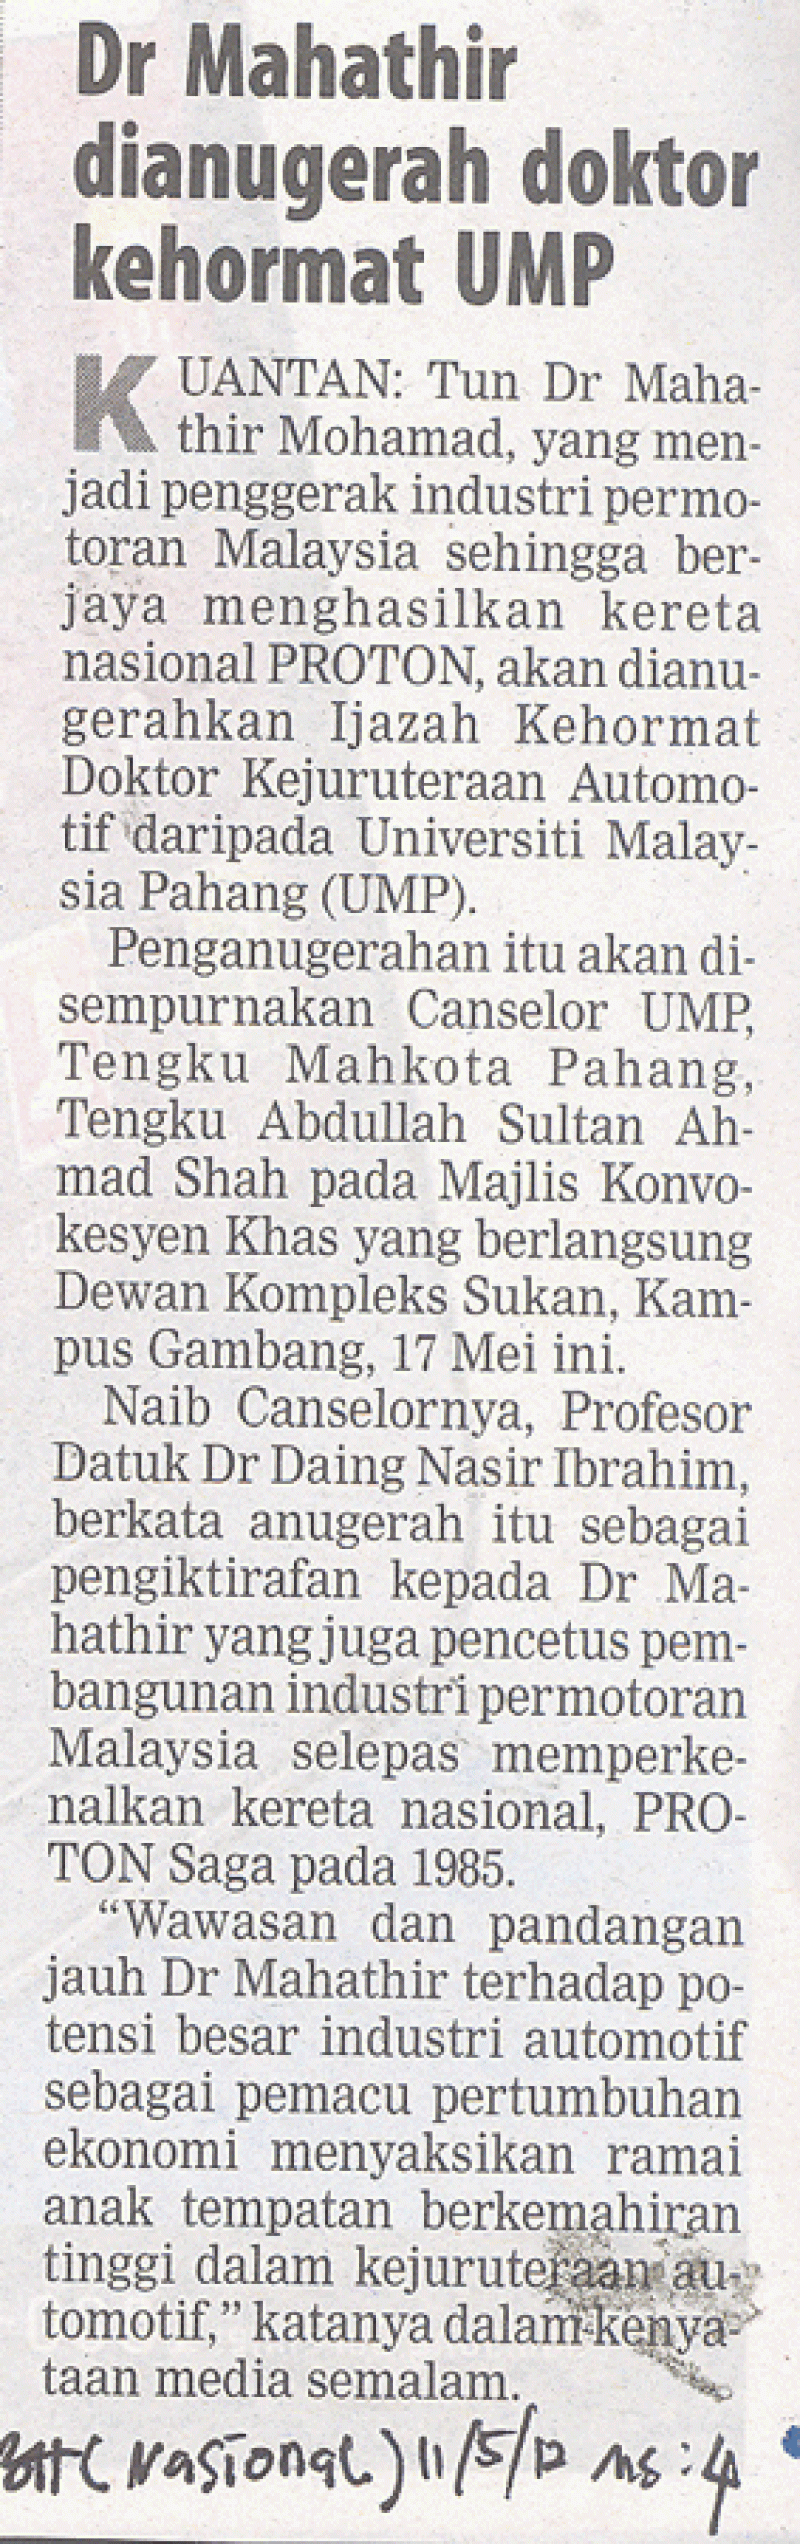 Dr. Mahathir Dianugerahkan Doktor Kehormat UMP